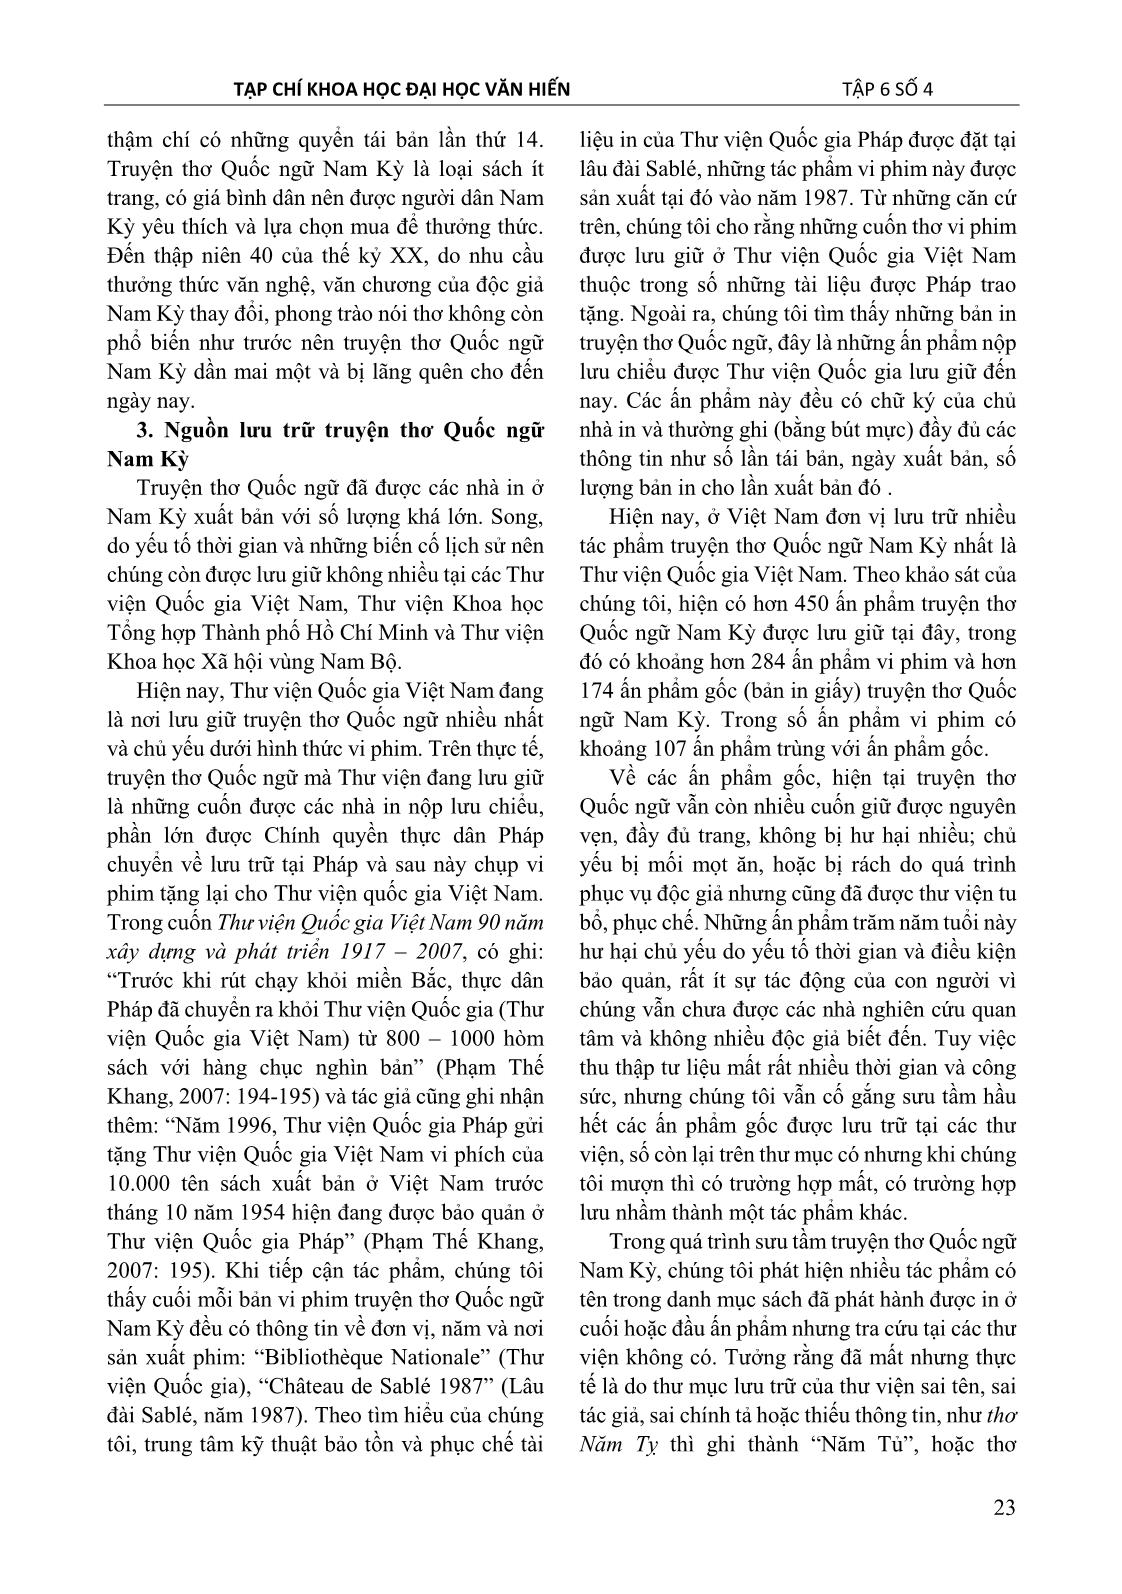 Truyện thơ Quốc ngữ Nam kỳ – Một loại hình văn chương bị lãng quên trang 7